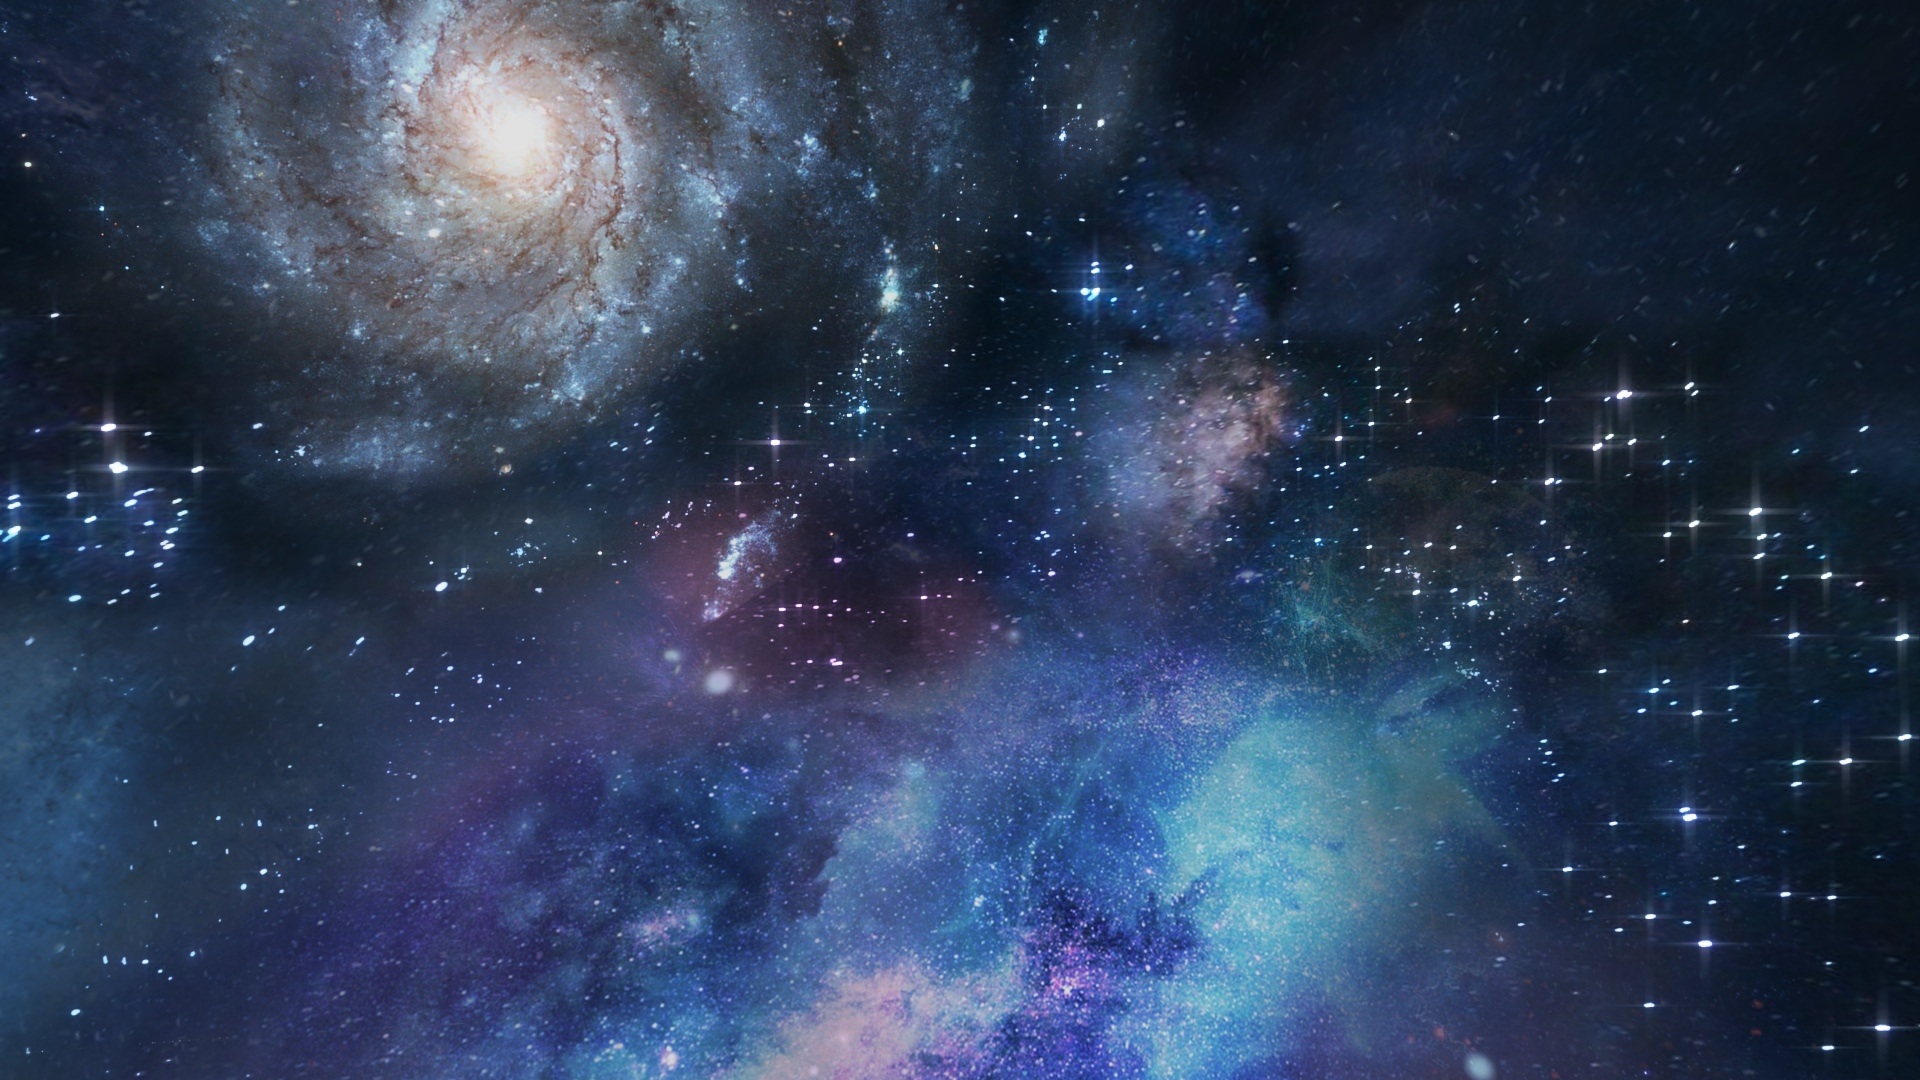 étoiles et galaxies dans le ciel lointain - Image parAlex Myers de Pixabay